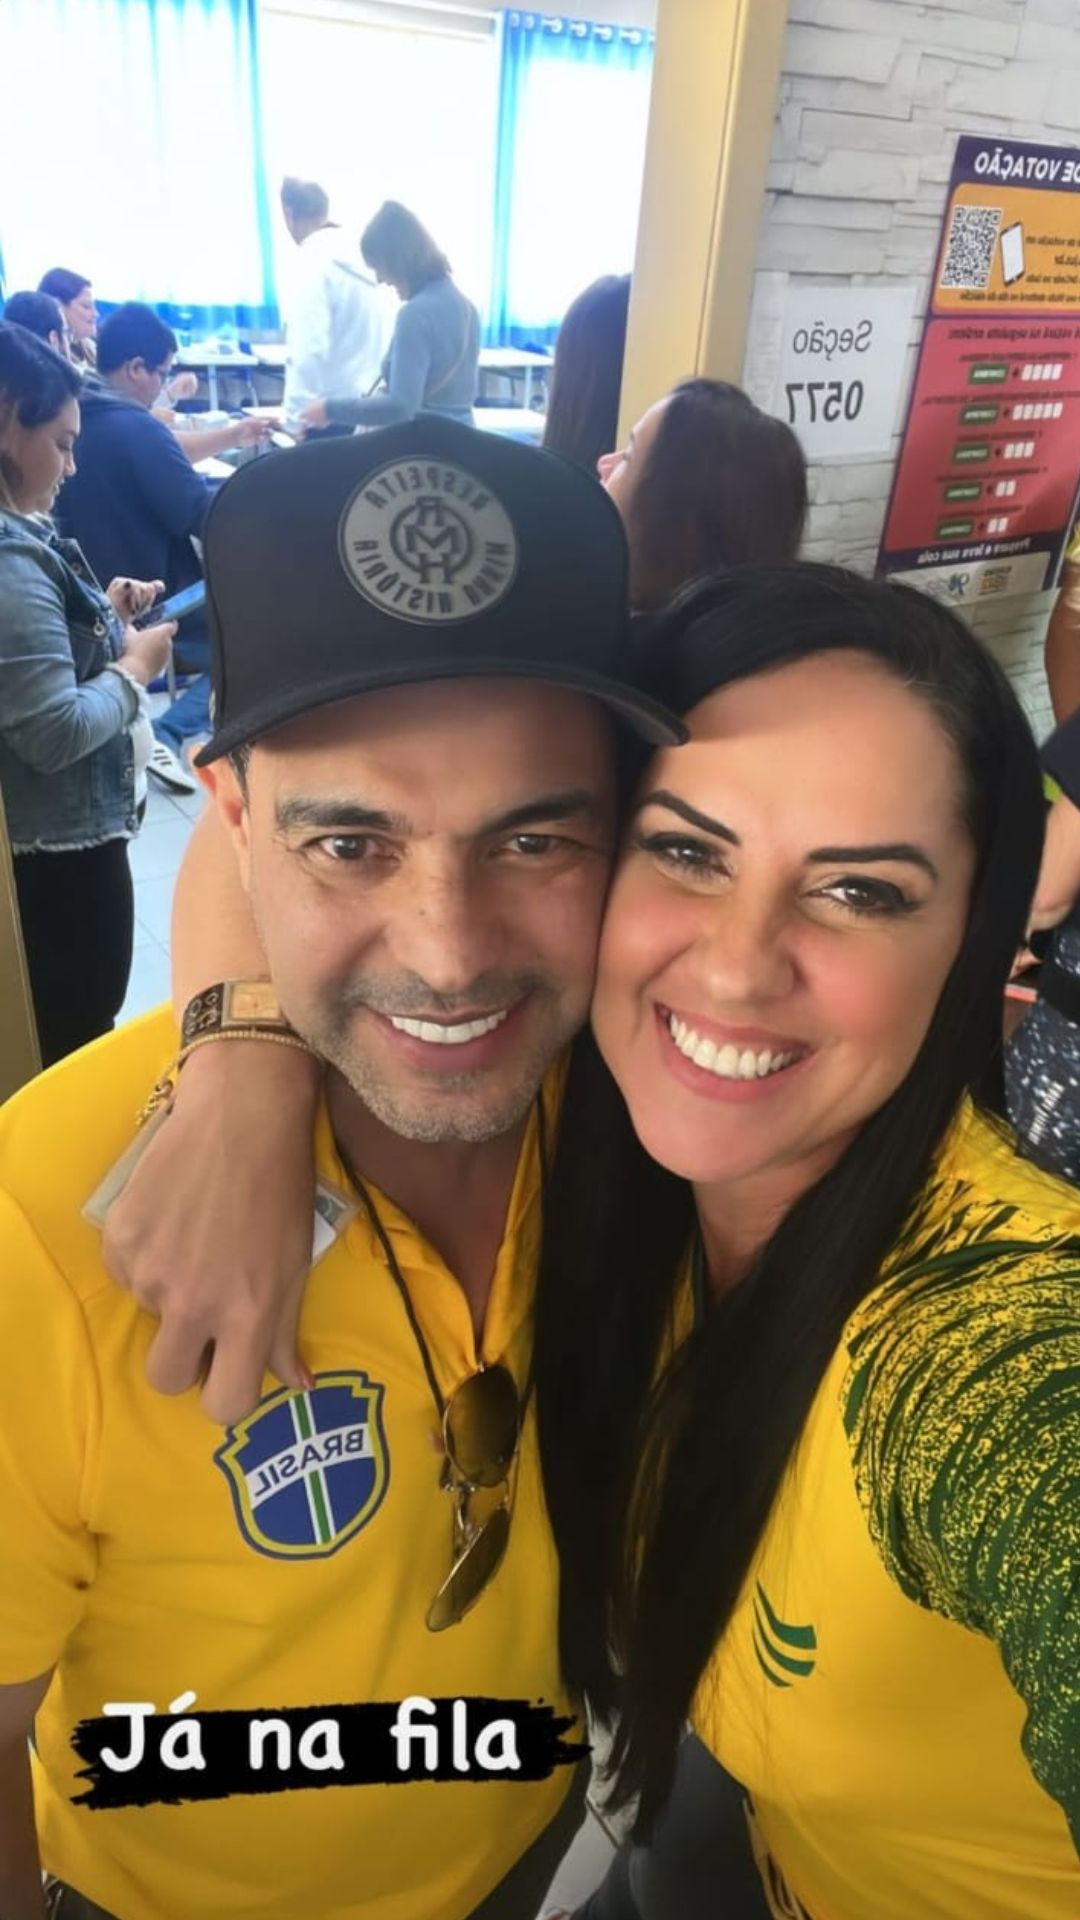 Graciele Lacerda e Zezé Di Camargo votando nas eleições. Foto: Reprodução/Instagram - 02.10.2022